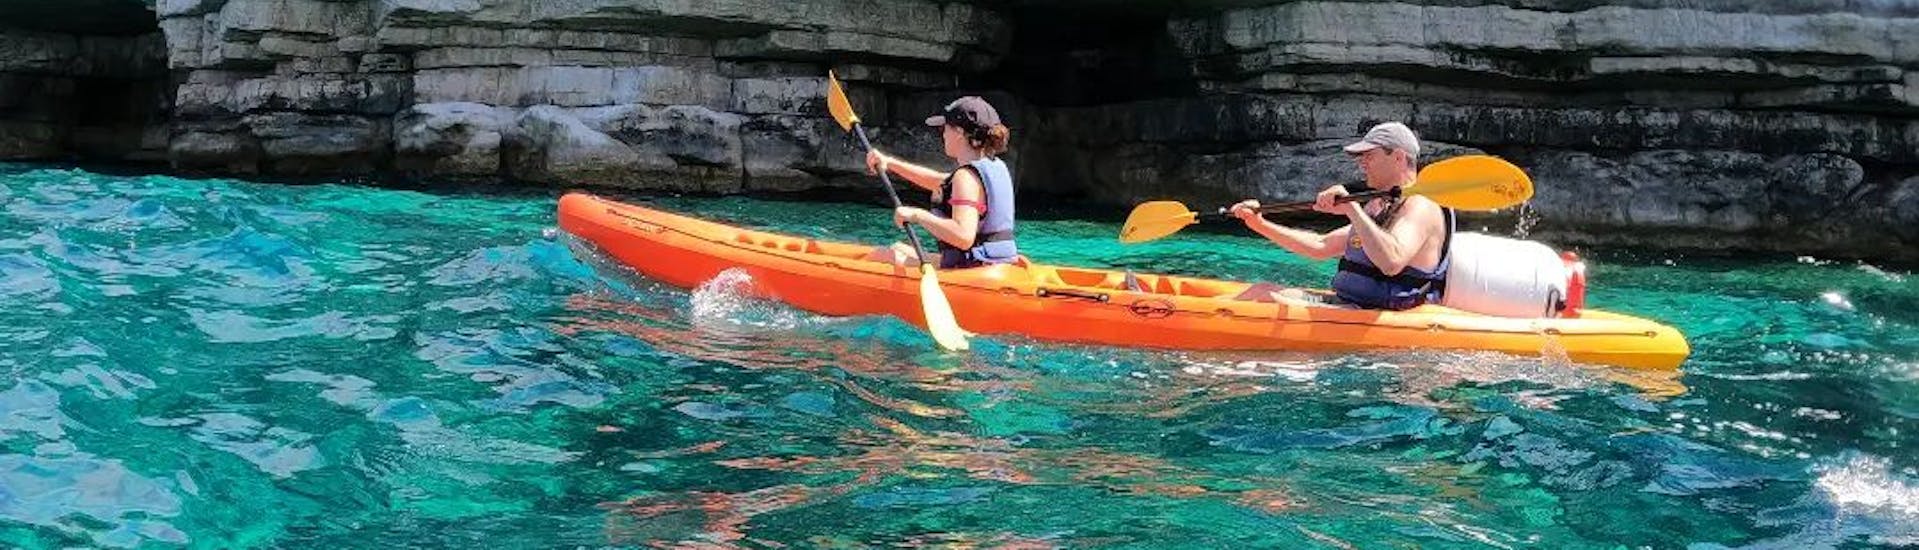 Kayak de mar en las aguas azules del mar Adriático frente a una cueva durante la excursión en kayak de mar a las cuevas de Pula por Pula Adventure Team.